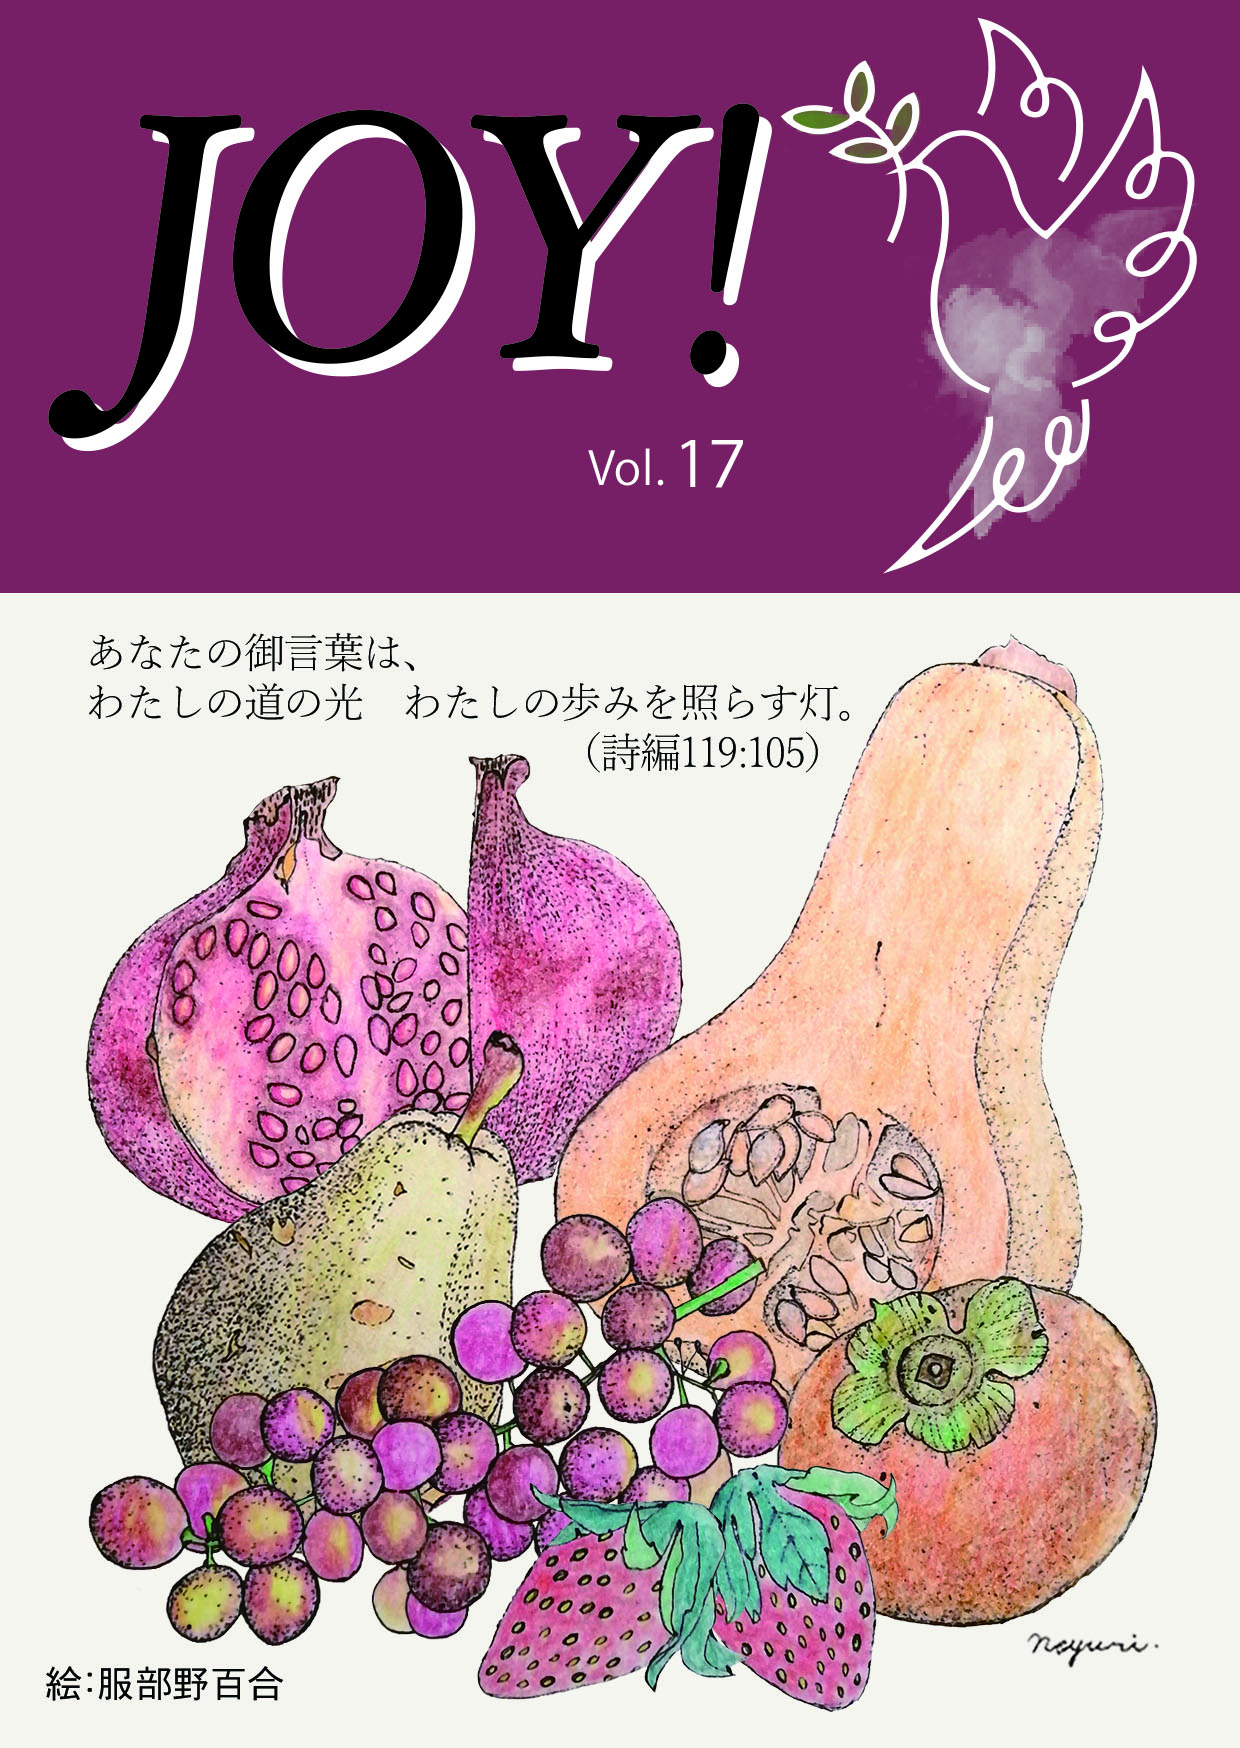 季刊紙 『JOY!』冬号配布中(Vol.17)